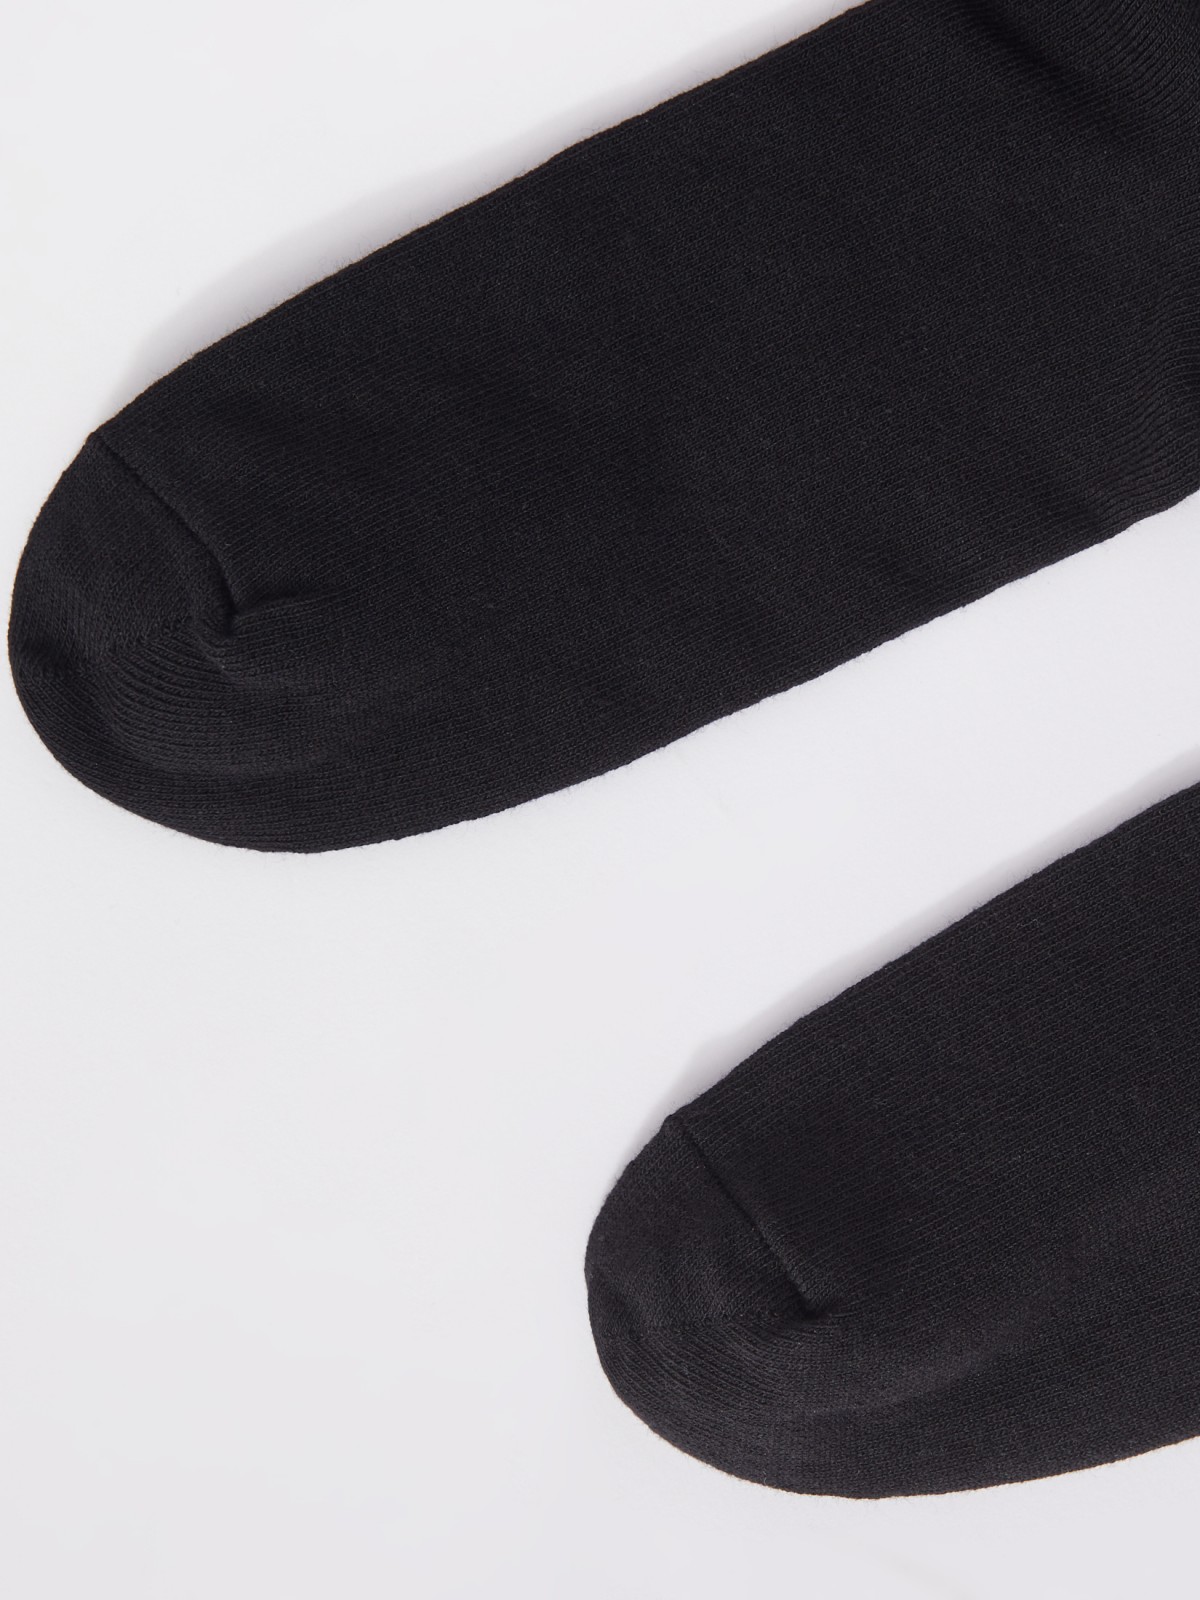 Набор носков (3 пары в комплекте) zolla 01331996G015, цвет черный, размер 25-27 - фото 5